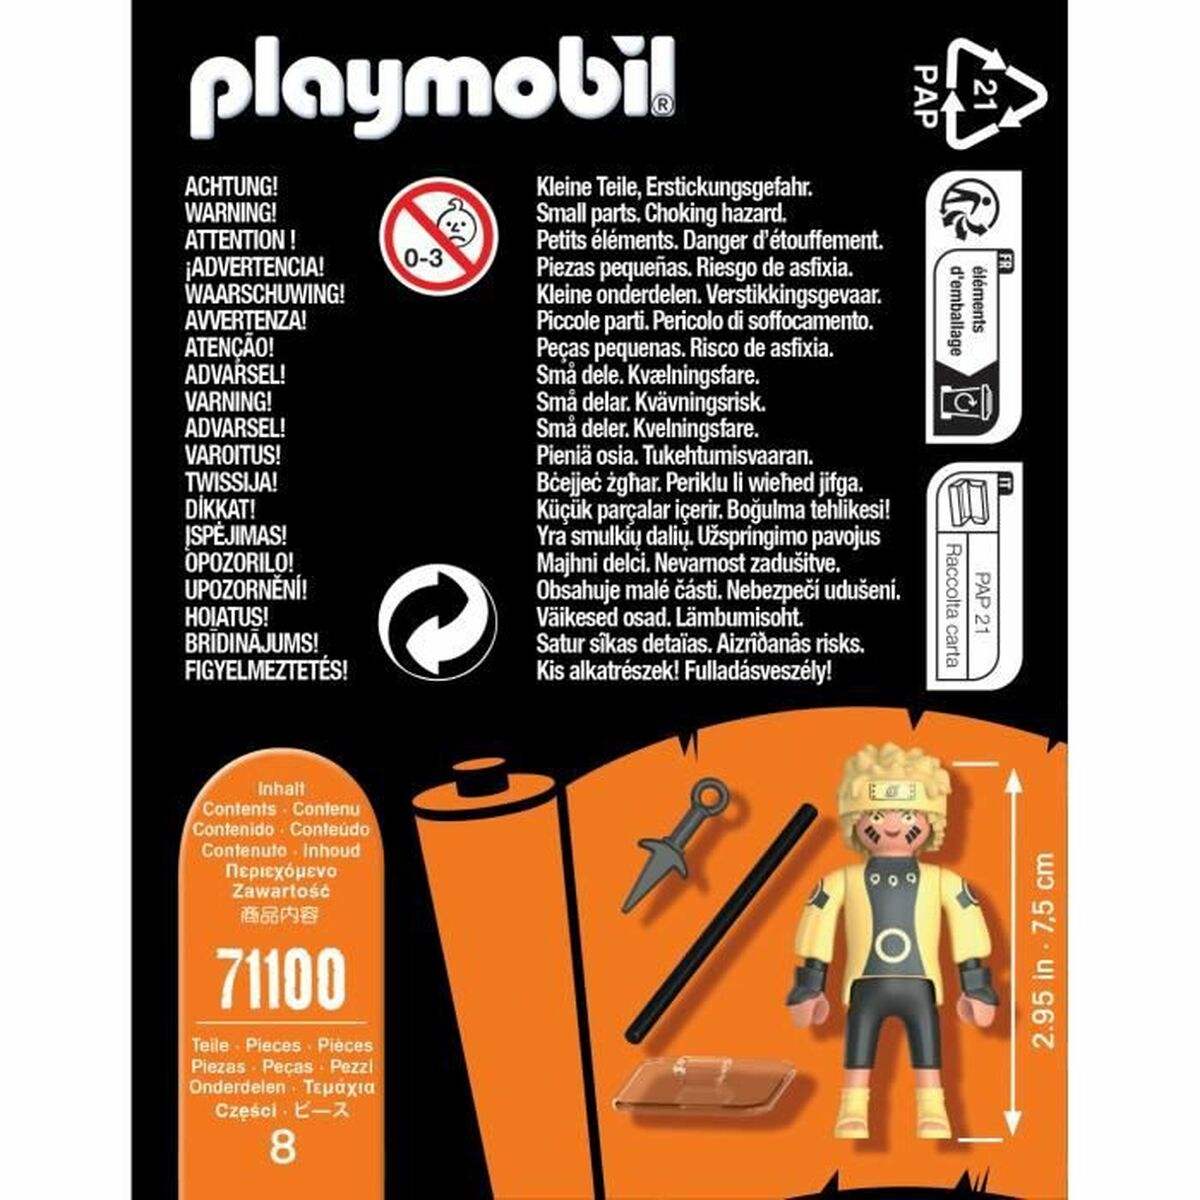 Figura de Acción Playmobil 71100 Naruto 8 Piezas